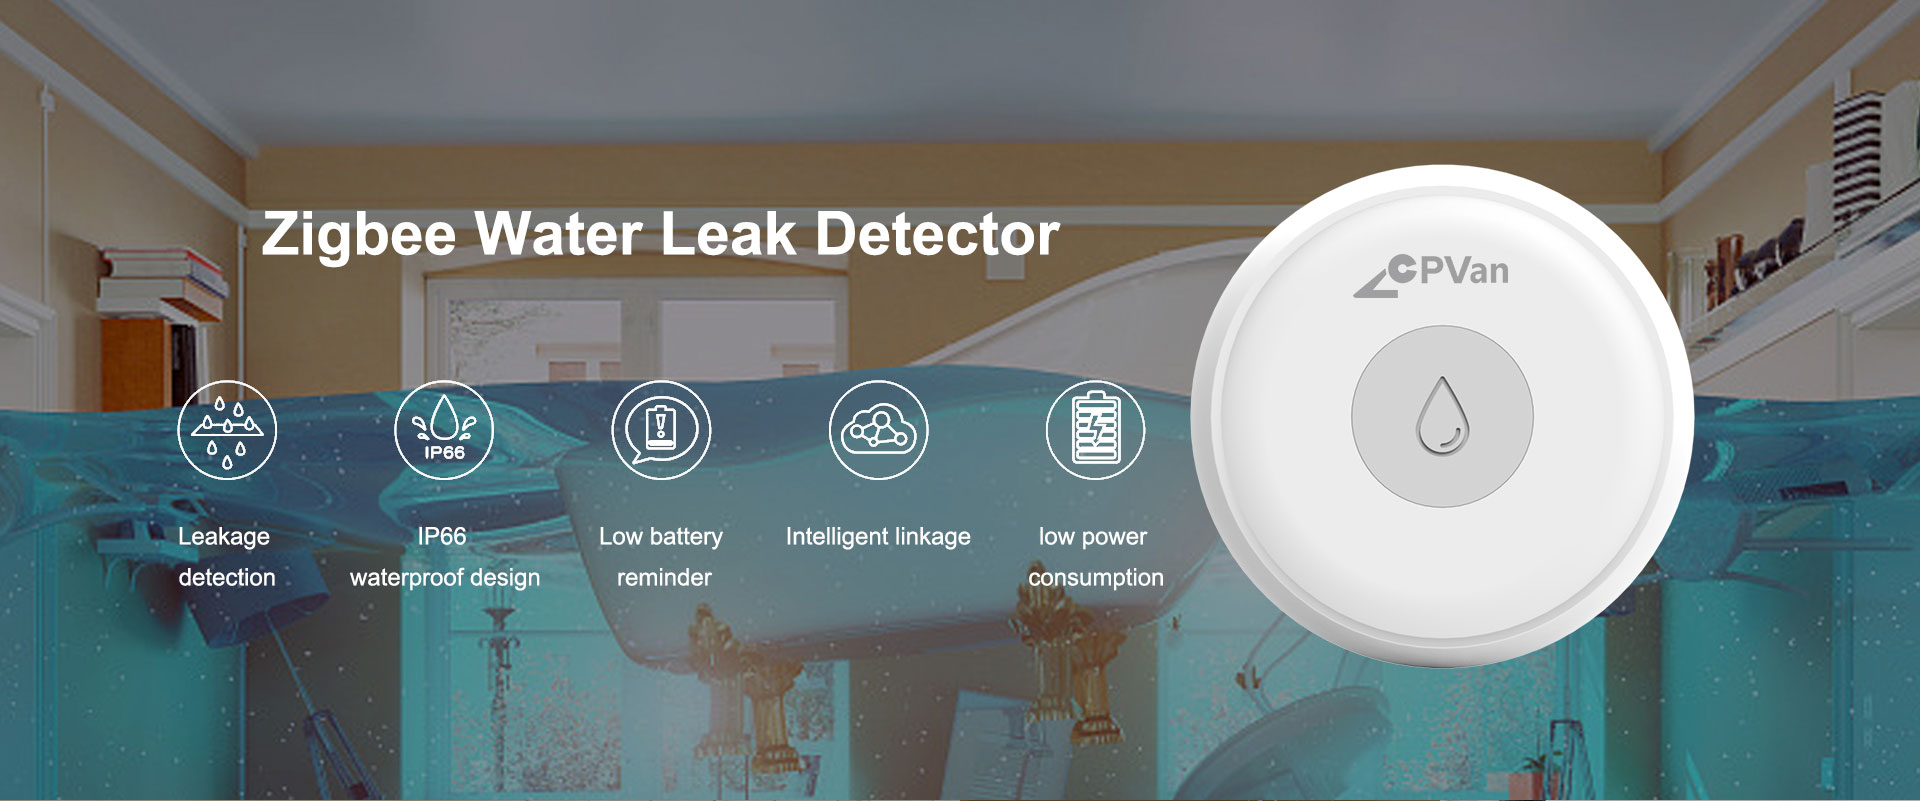 Zigbee Water Leak Sensor